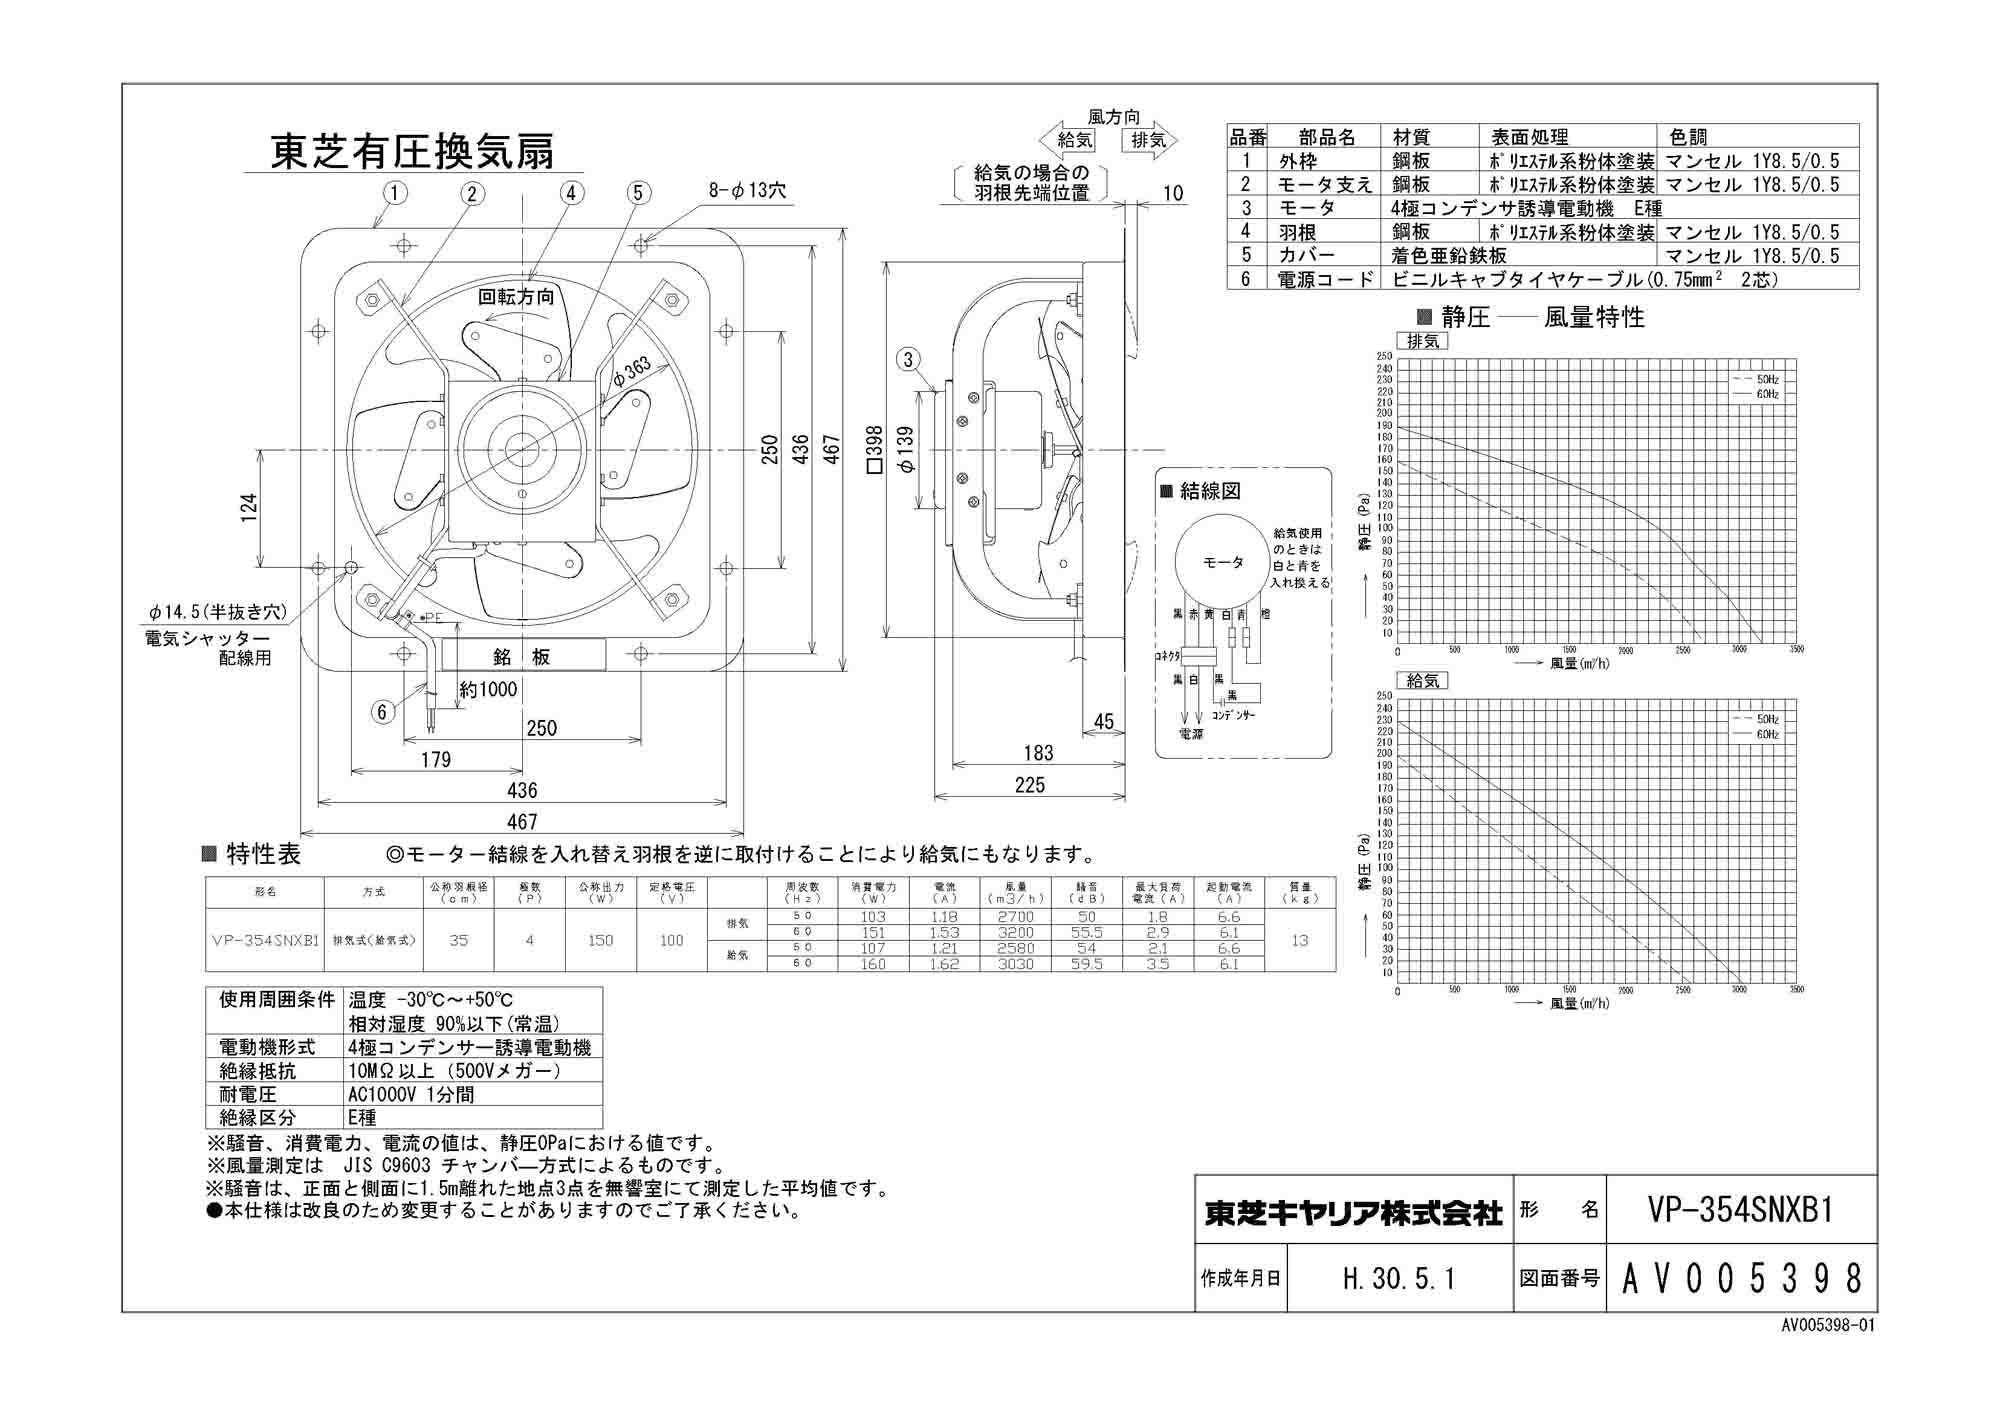 東芝 TOSHIBA 産業用換気扇 VP-354SNXA - 3